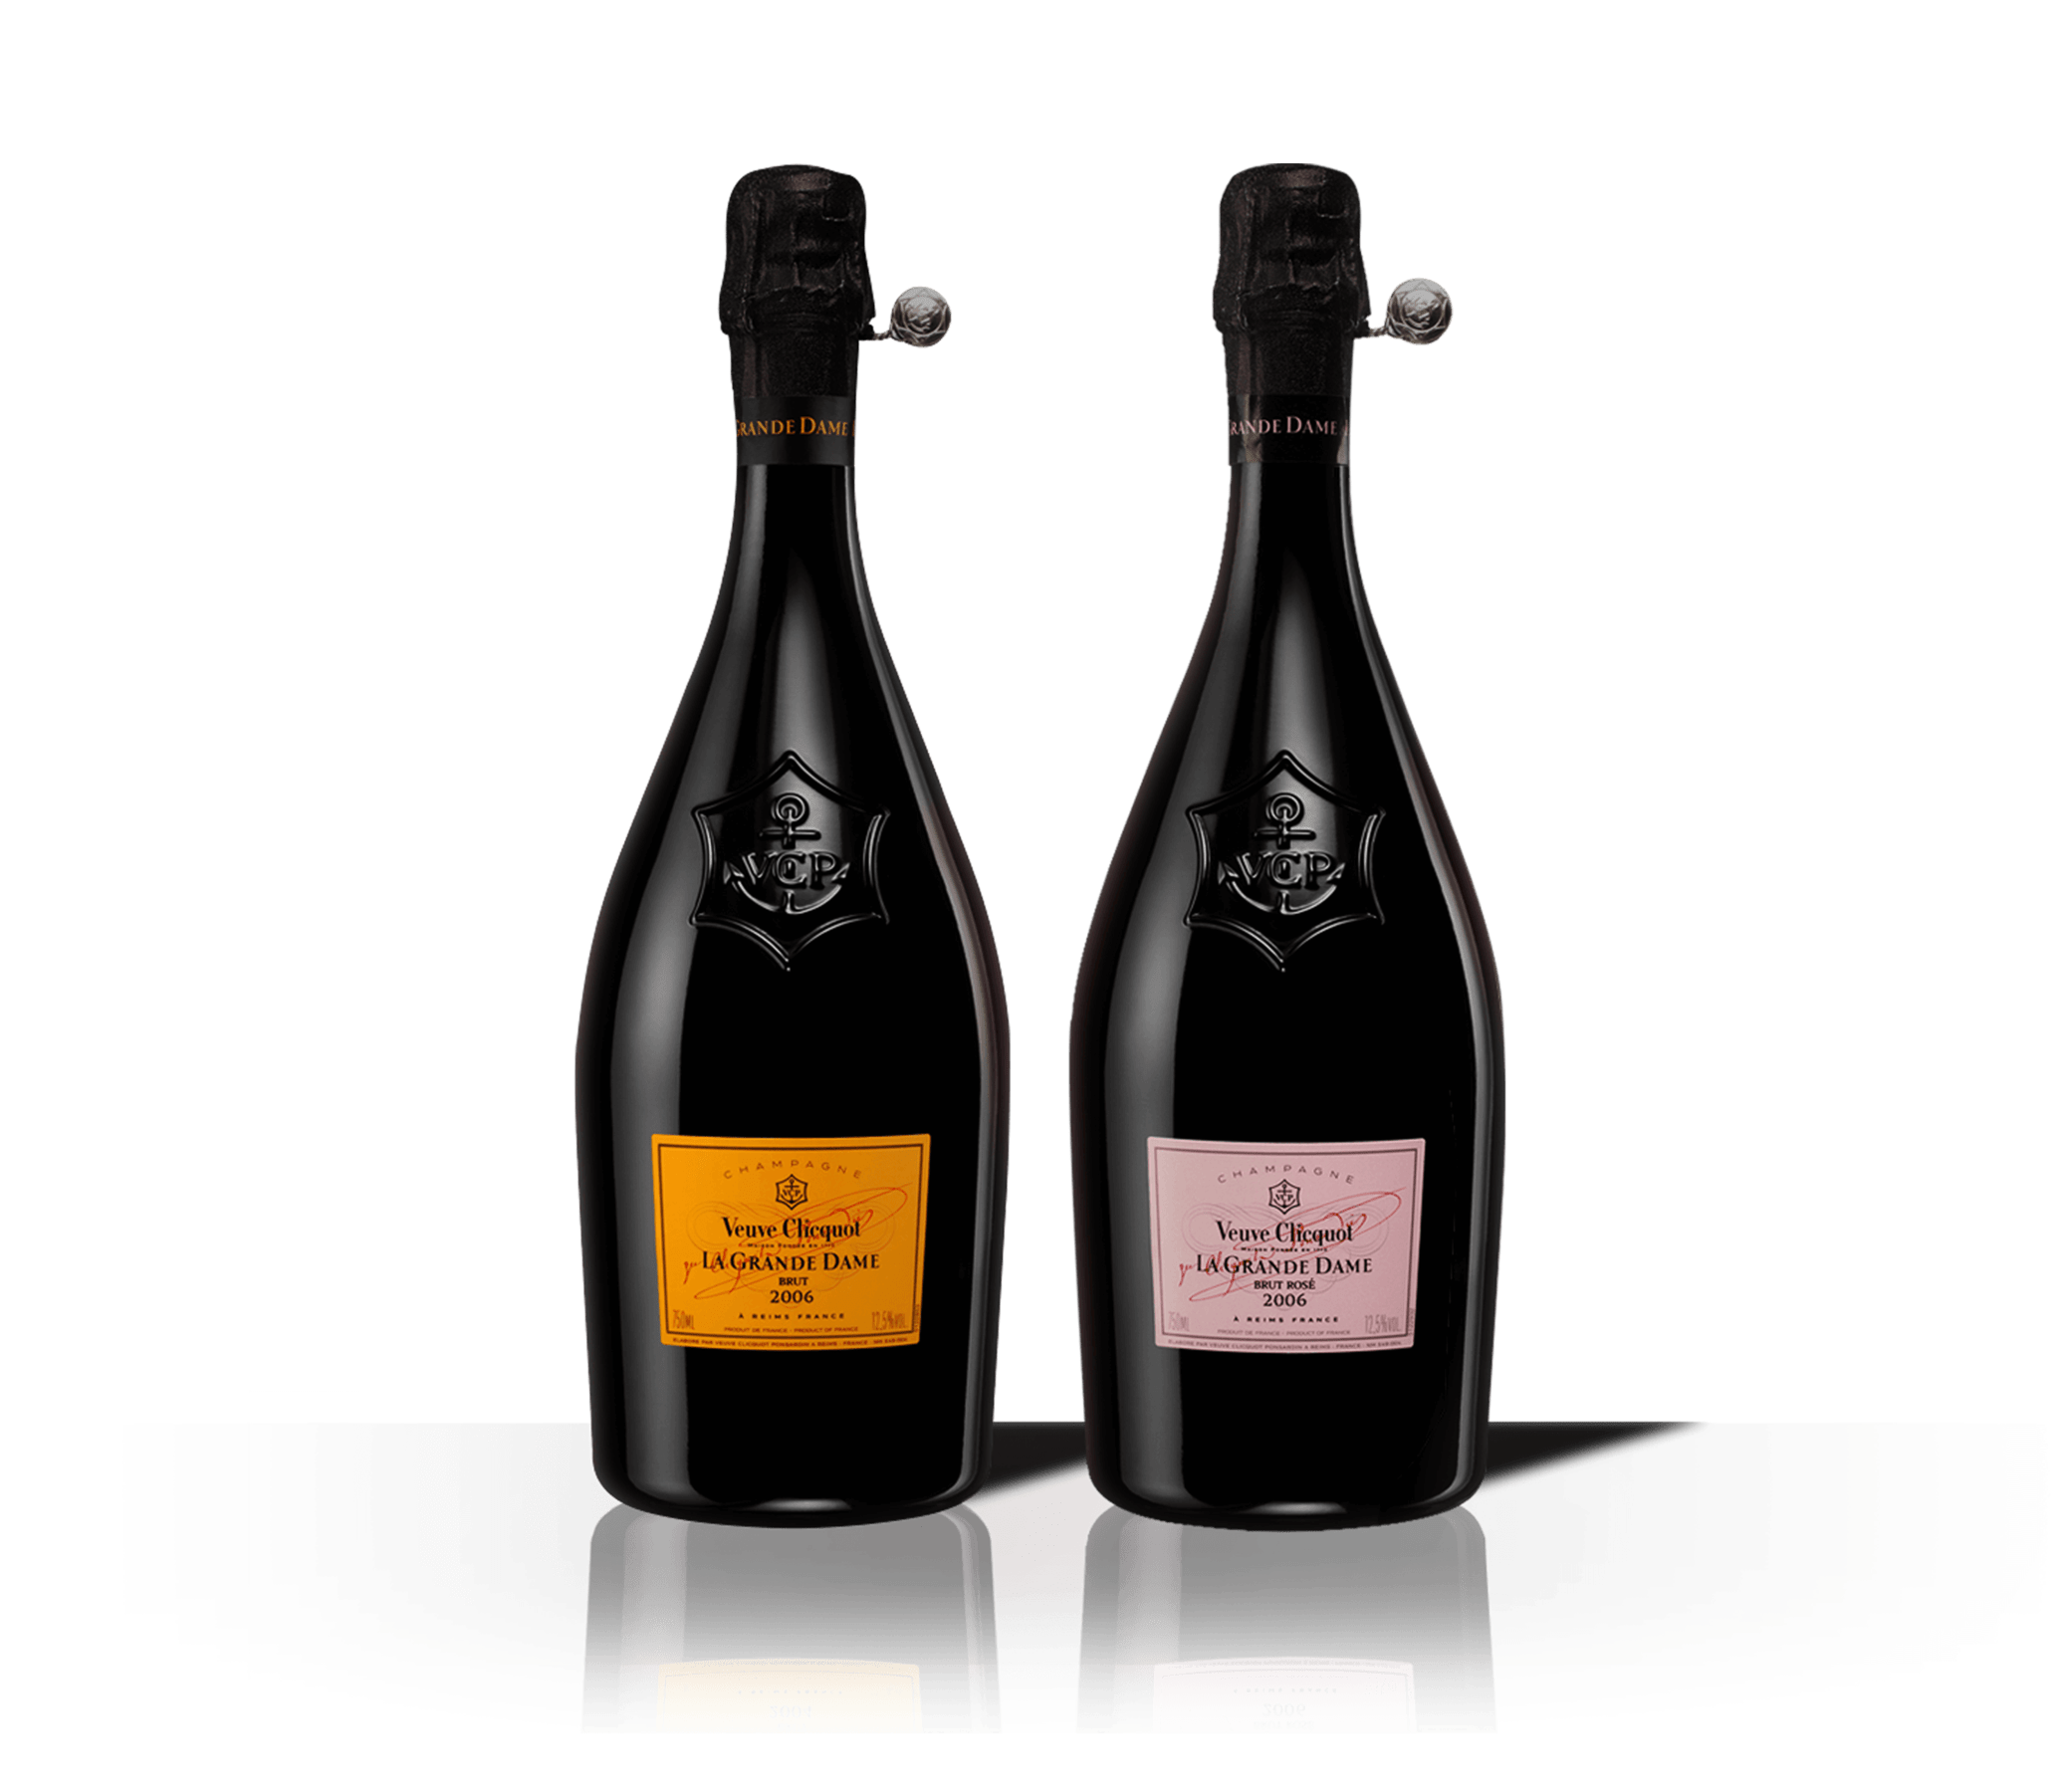 Botellas de champagne Veuve Clicquot La Grande Dame 2008